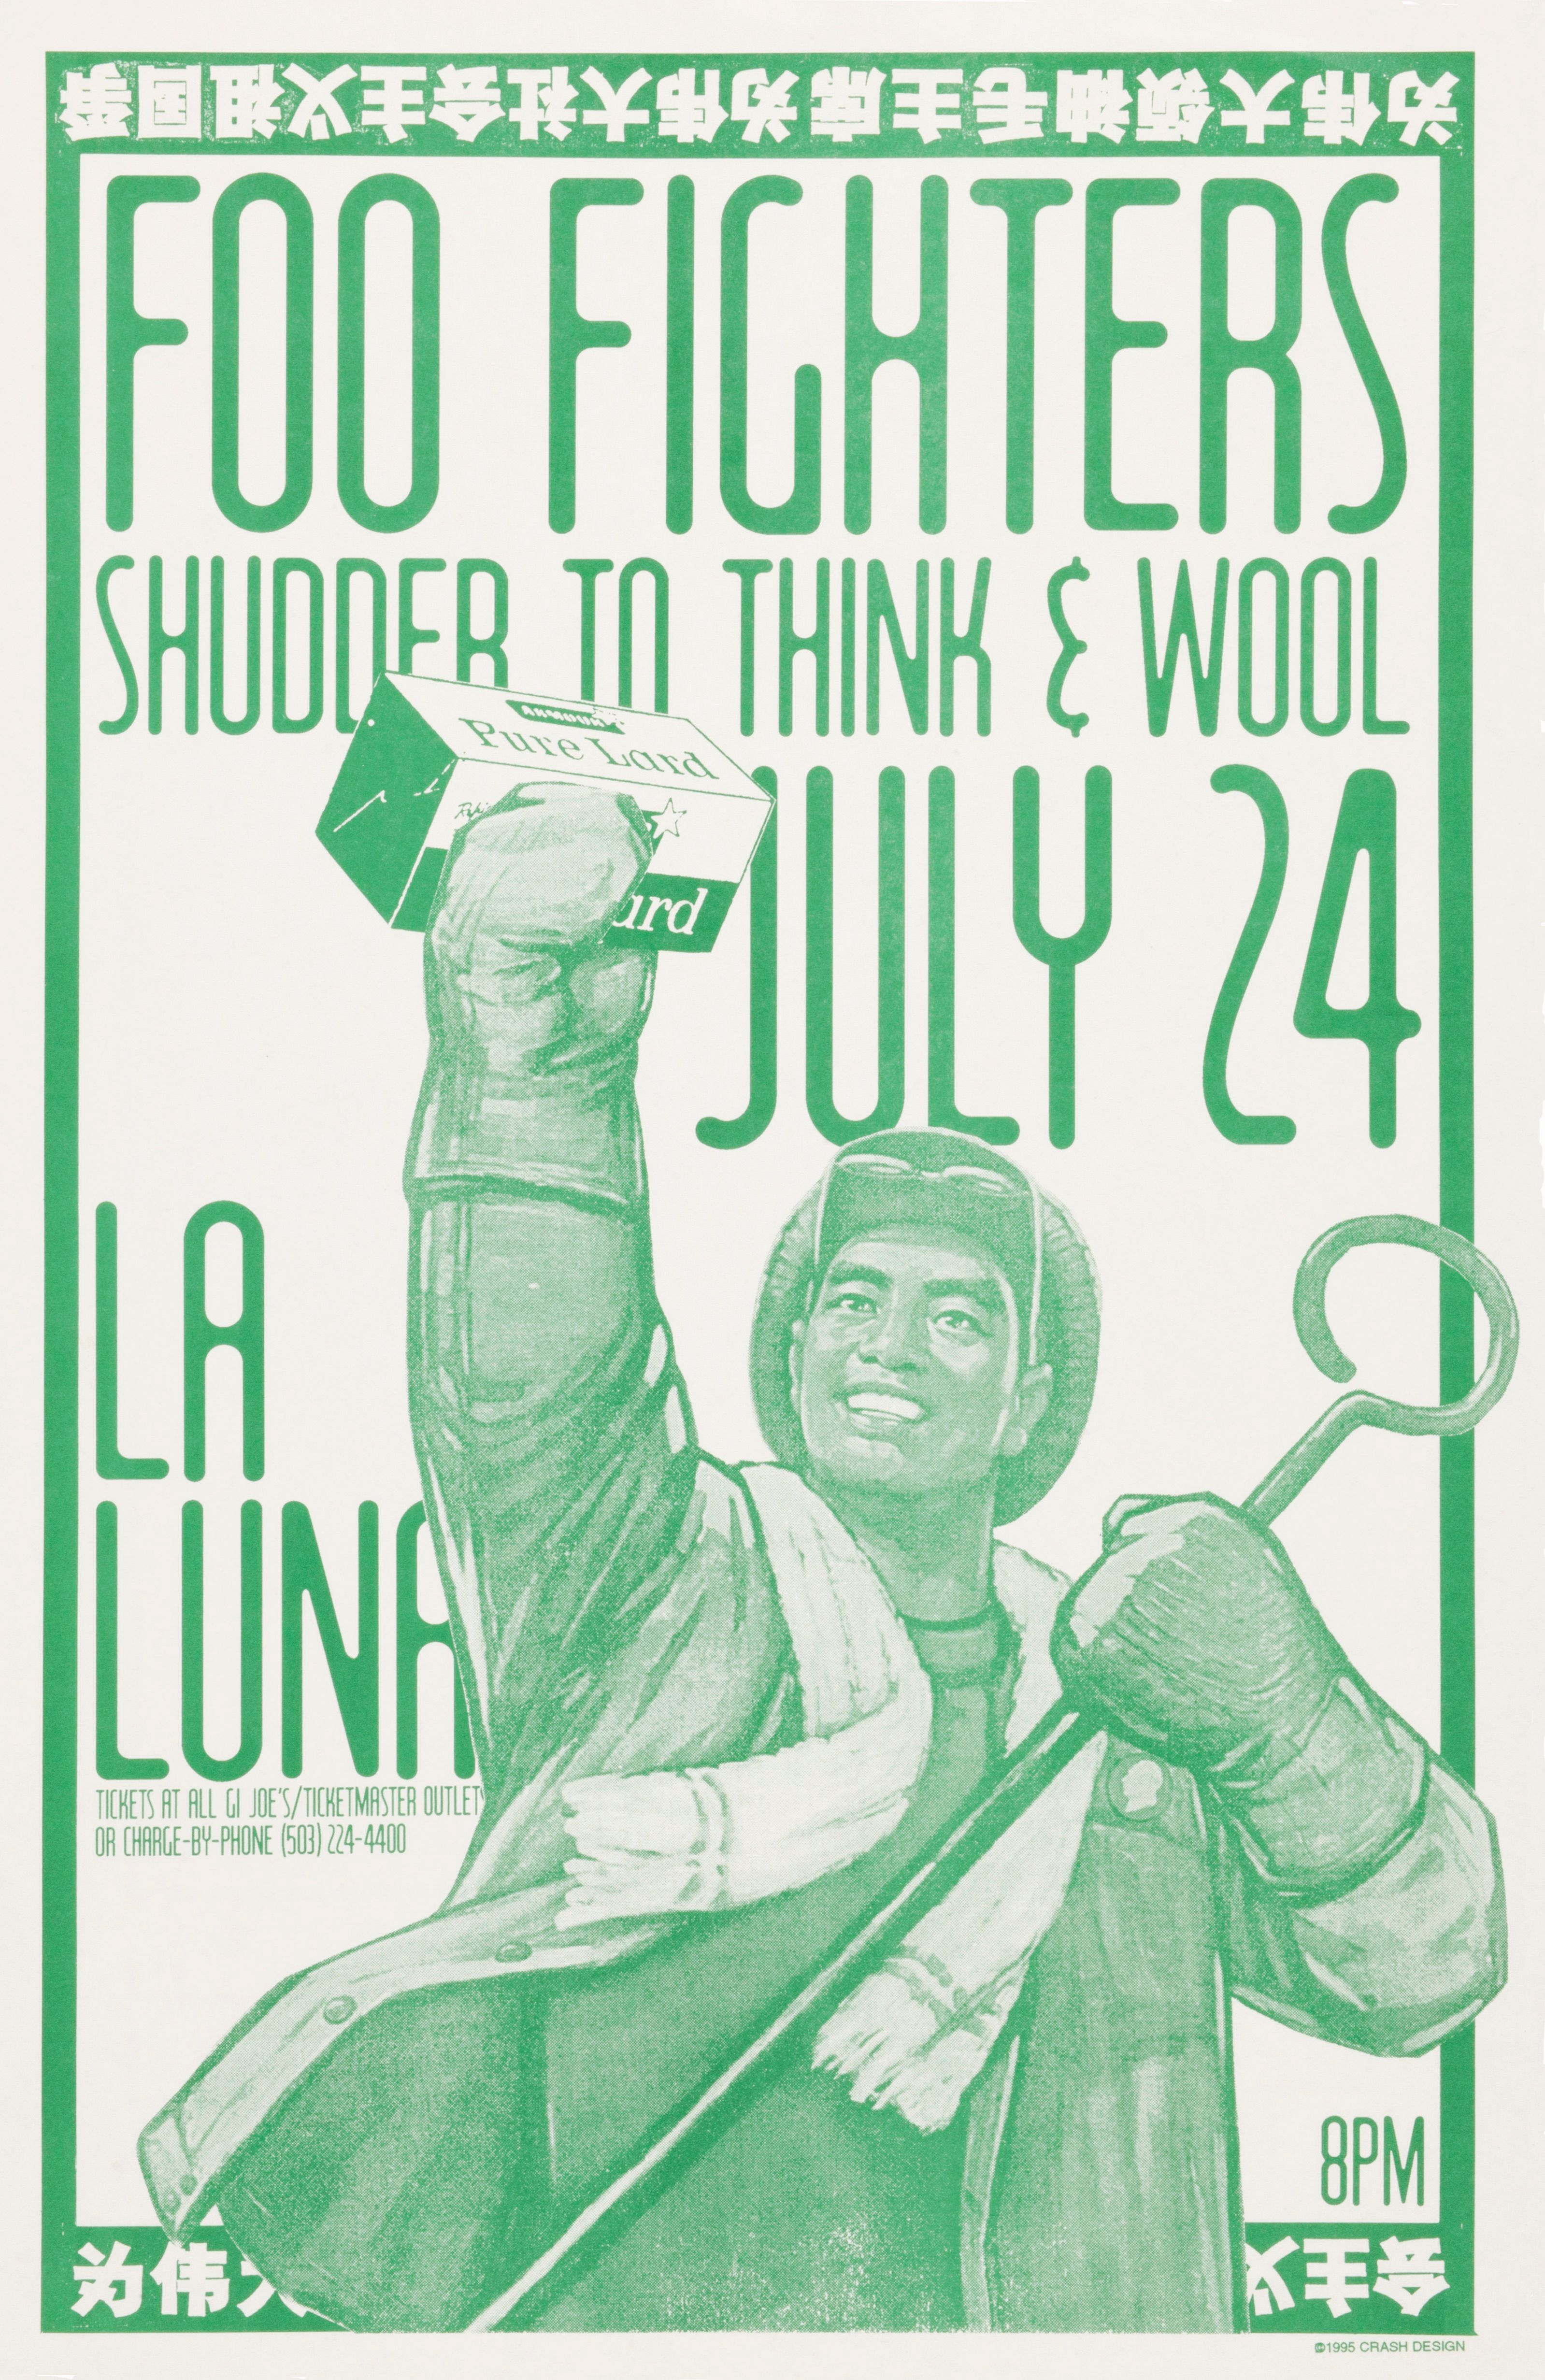 MXP-113.4 Foo Fighters 1995 La Luna  Jul 24 Concert Poster